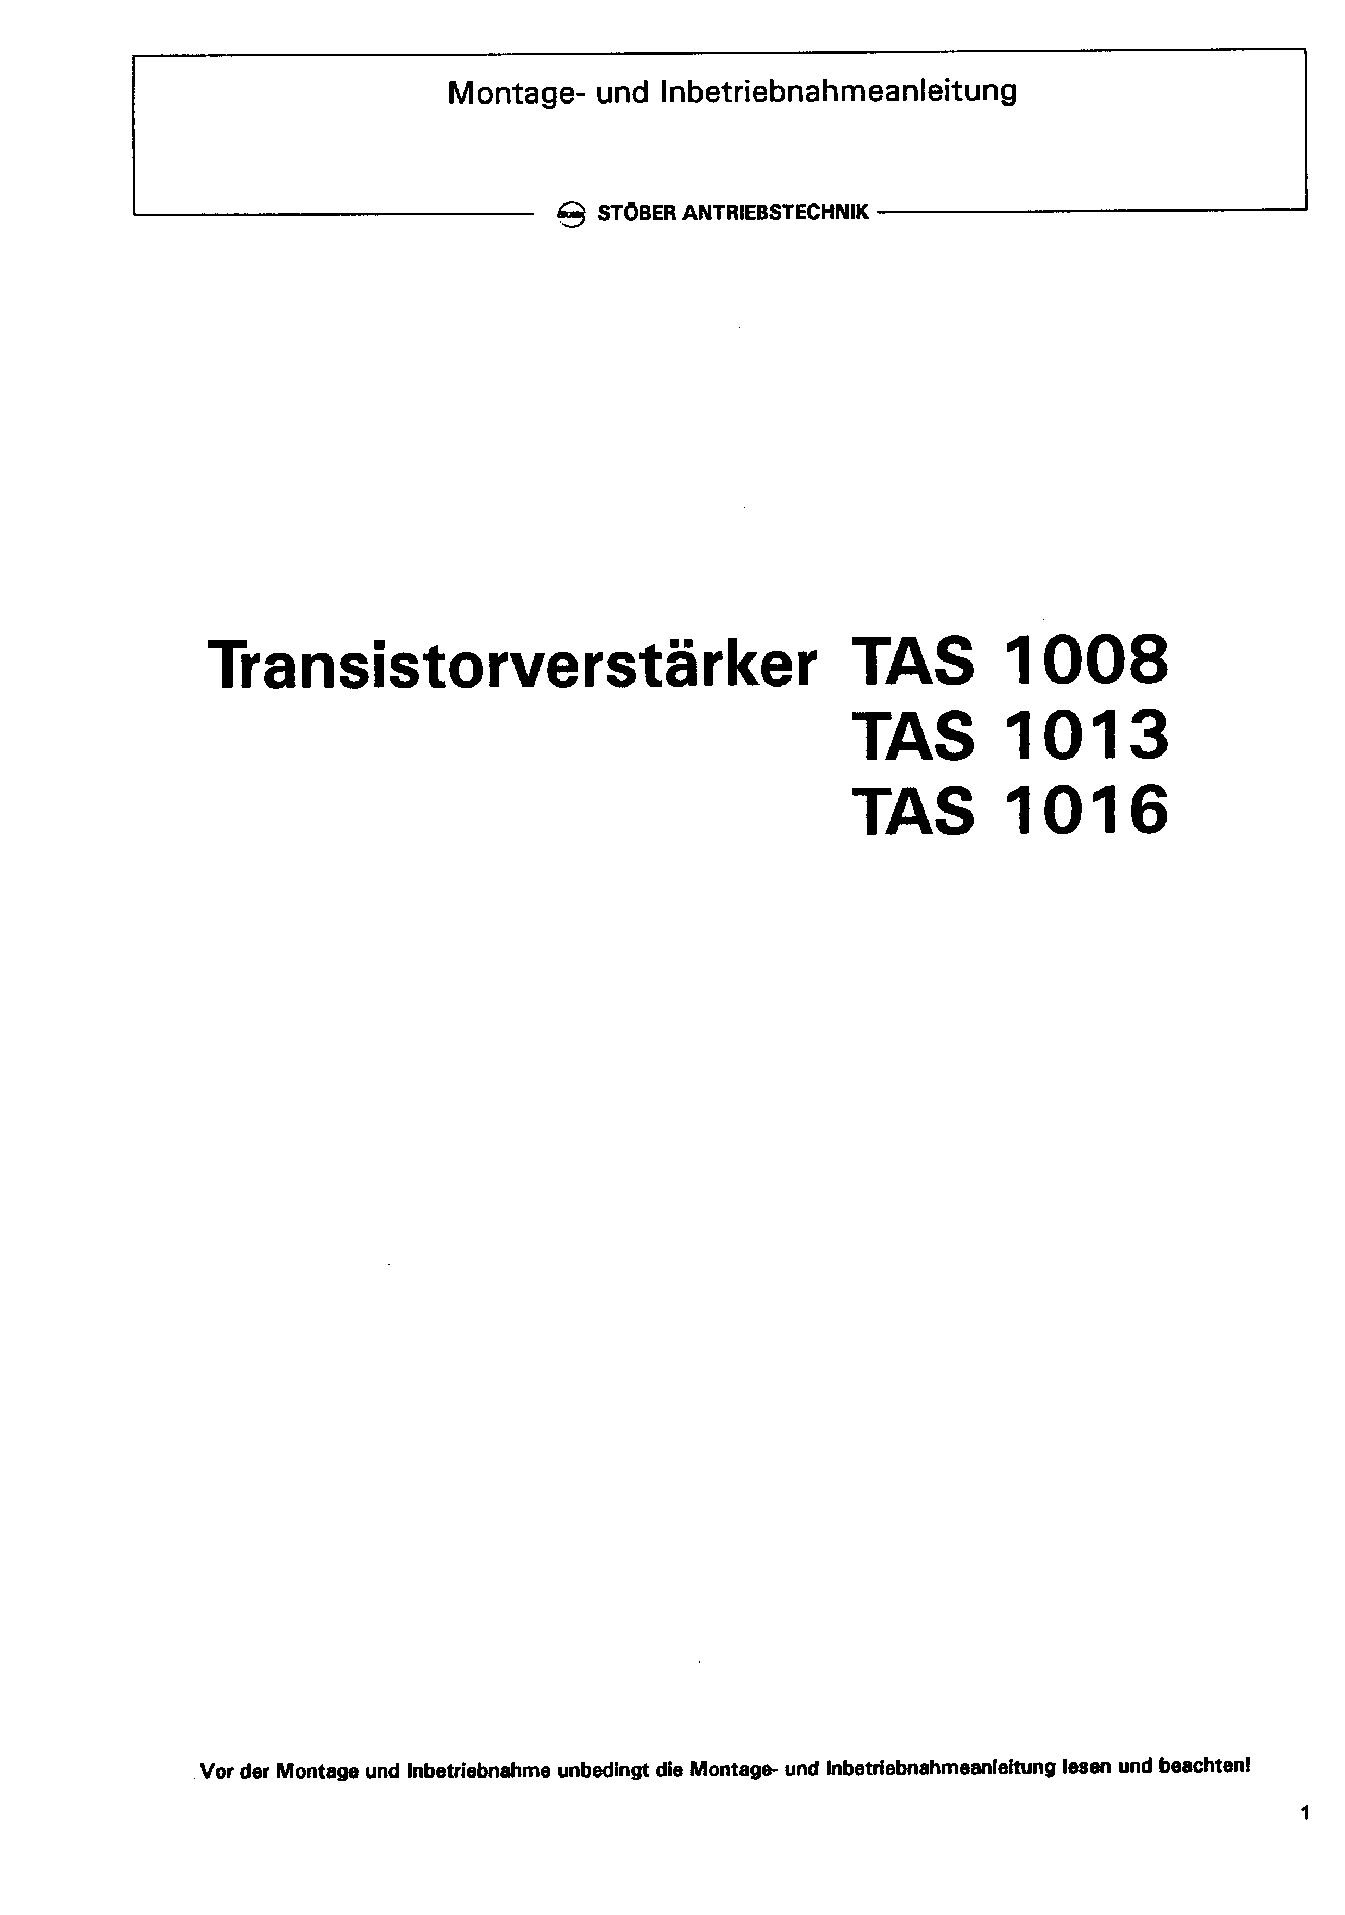 Dokumentation Transistorverstärker - TAS 1008 TAS 1013 TAS 1016